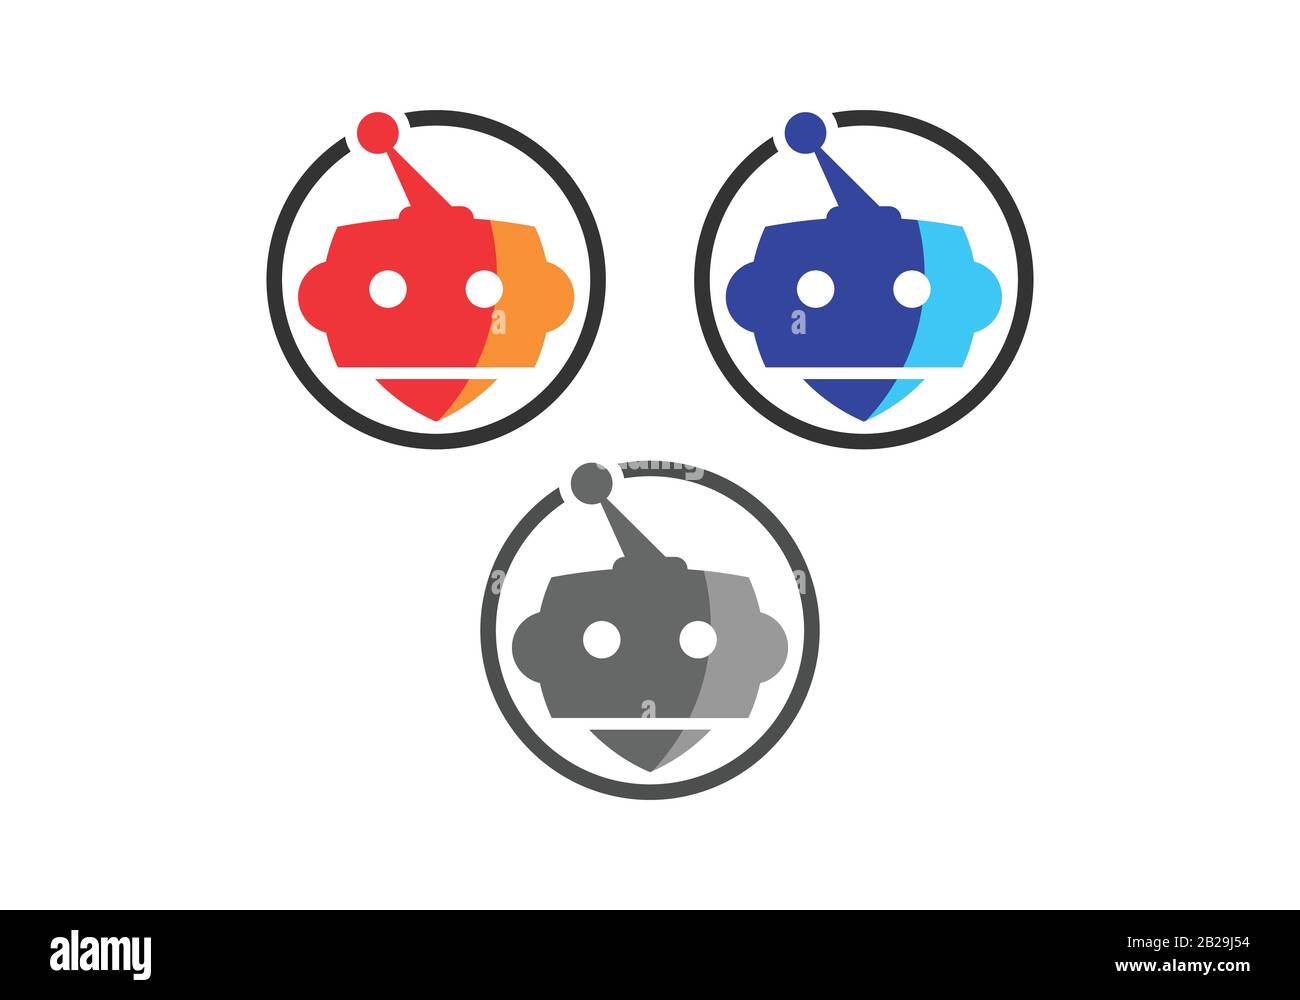 Il logo del robot appare in un cerchio su sfondo bianco. Immagine vettoriale icona robot carino Illustrazione Vettoriale